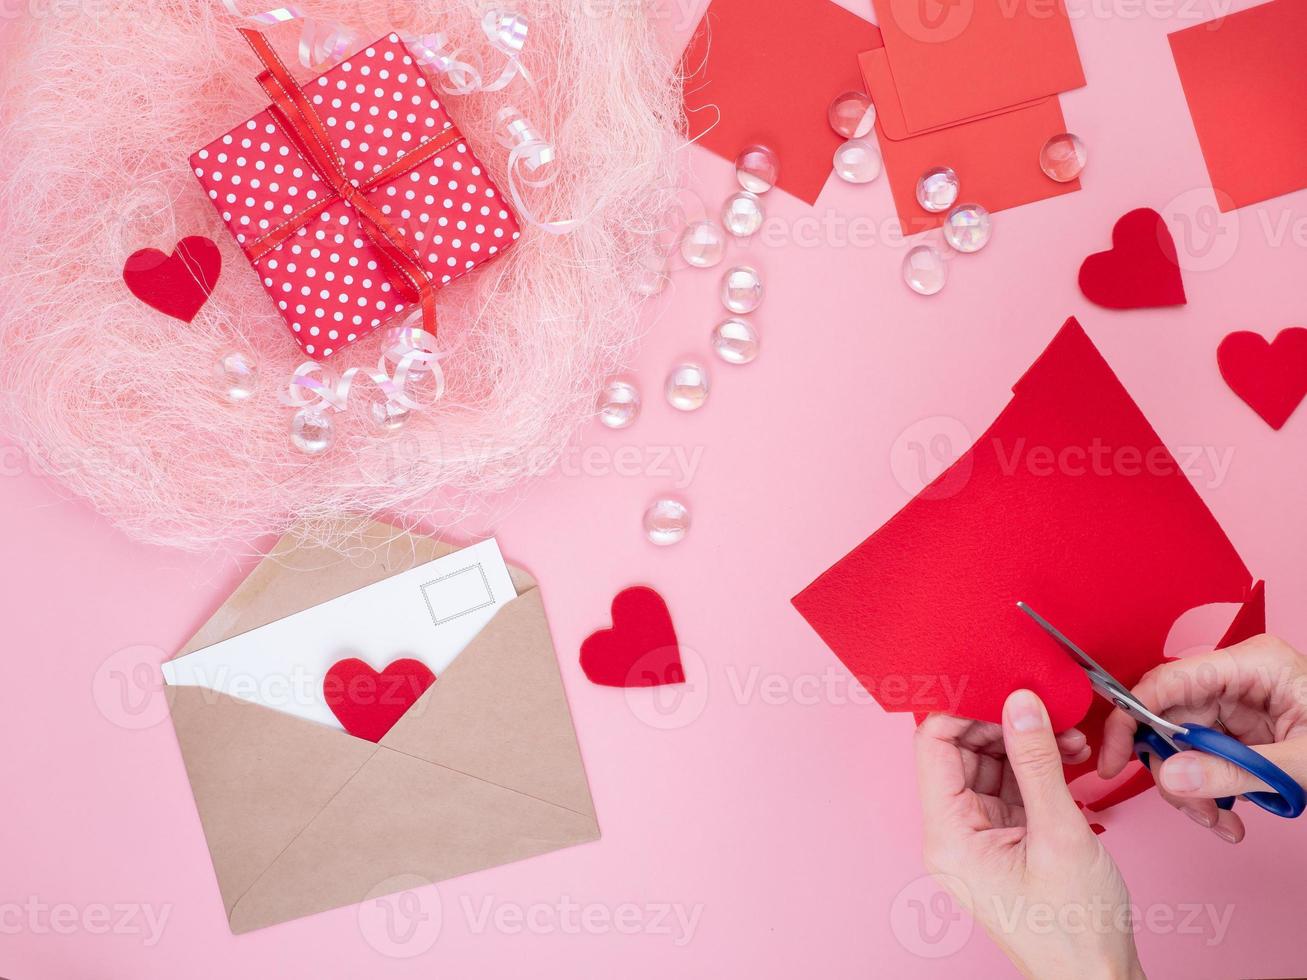 mulher corta corações de feltro vermelho, artesanato caseiro para o dia dos namorados, criatividade feita à mão, vista superior foto